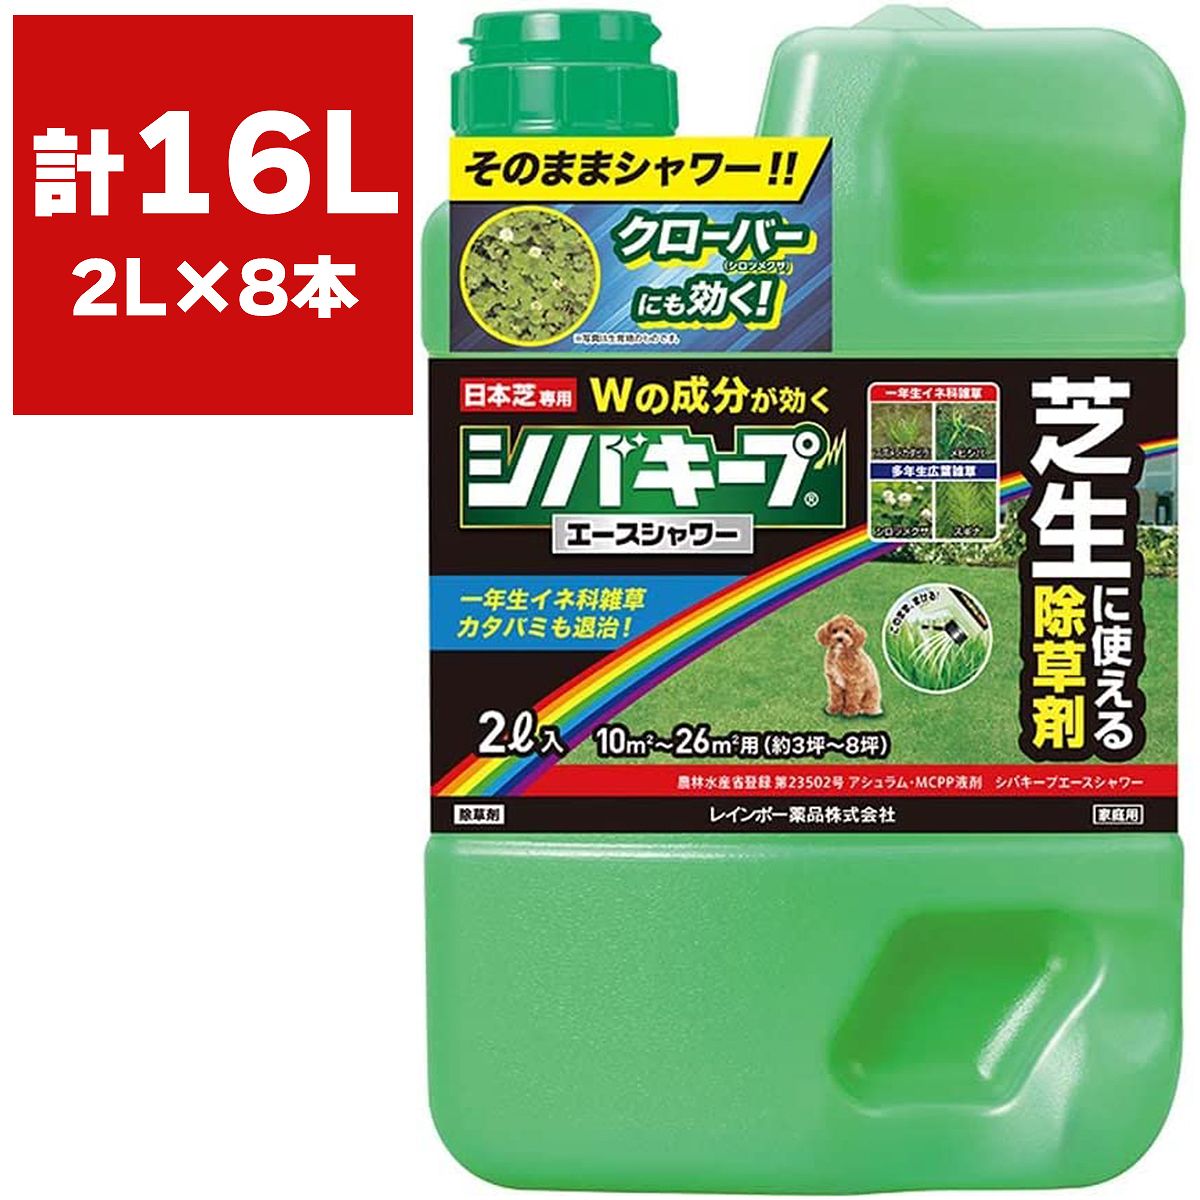 まとめ買い 8本入 シバキープエースシャワー 2L レインボー薬品 日本芝専用 そのまま使える除草剤 まくだけ簡単除草 芝生 雑草対策 芝生に使える除草剤 送料無料